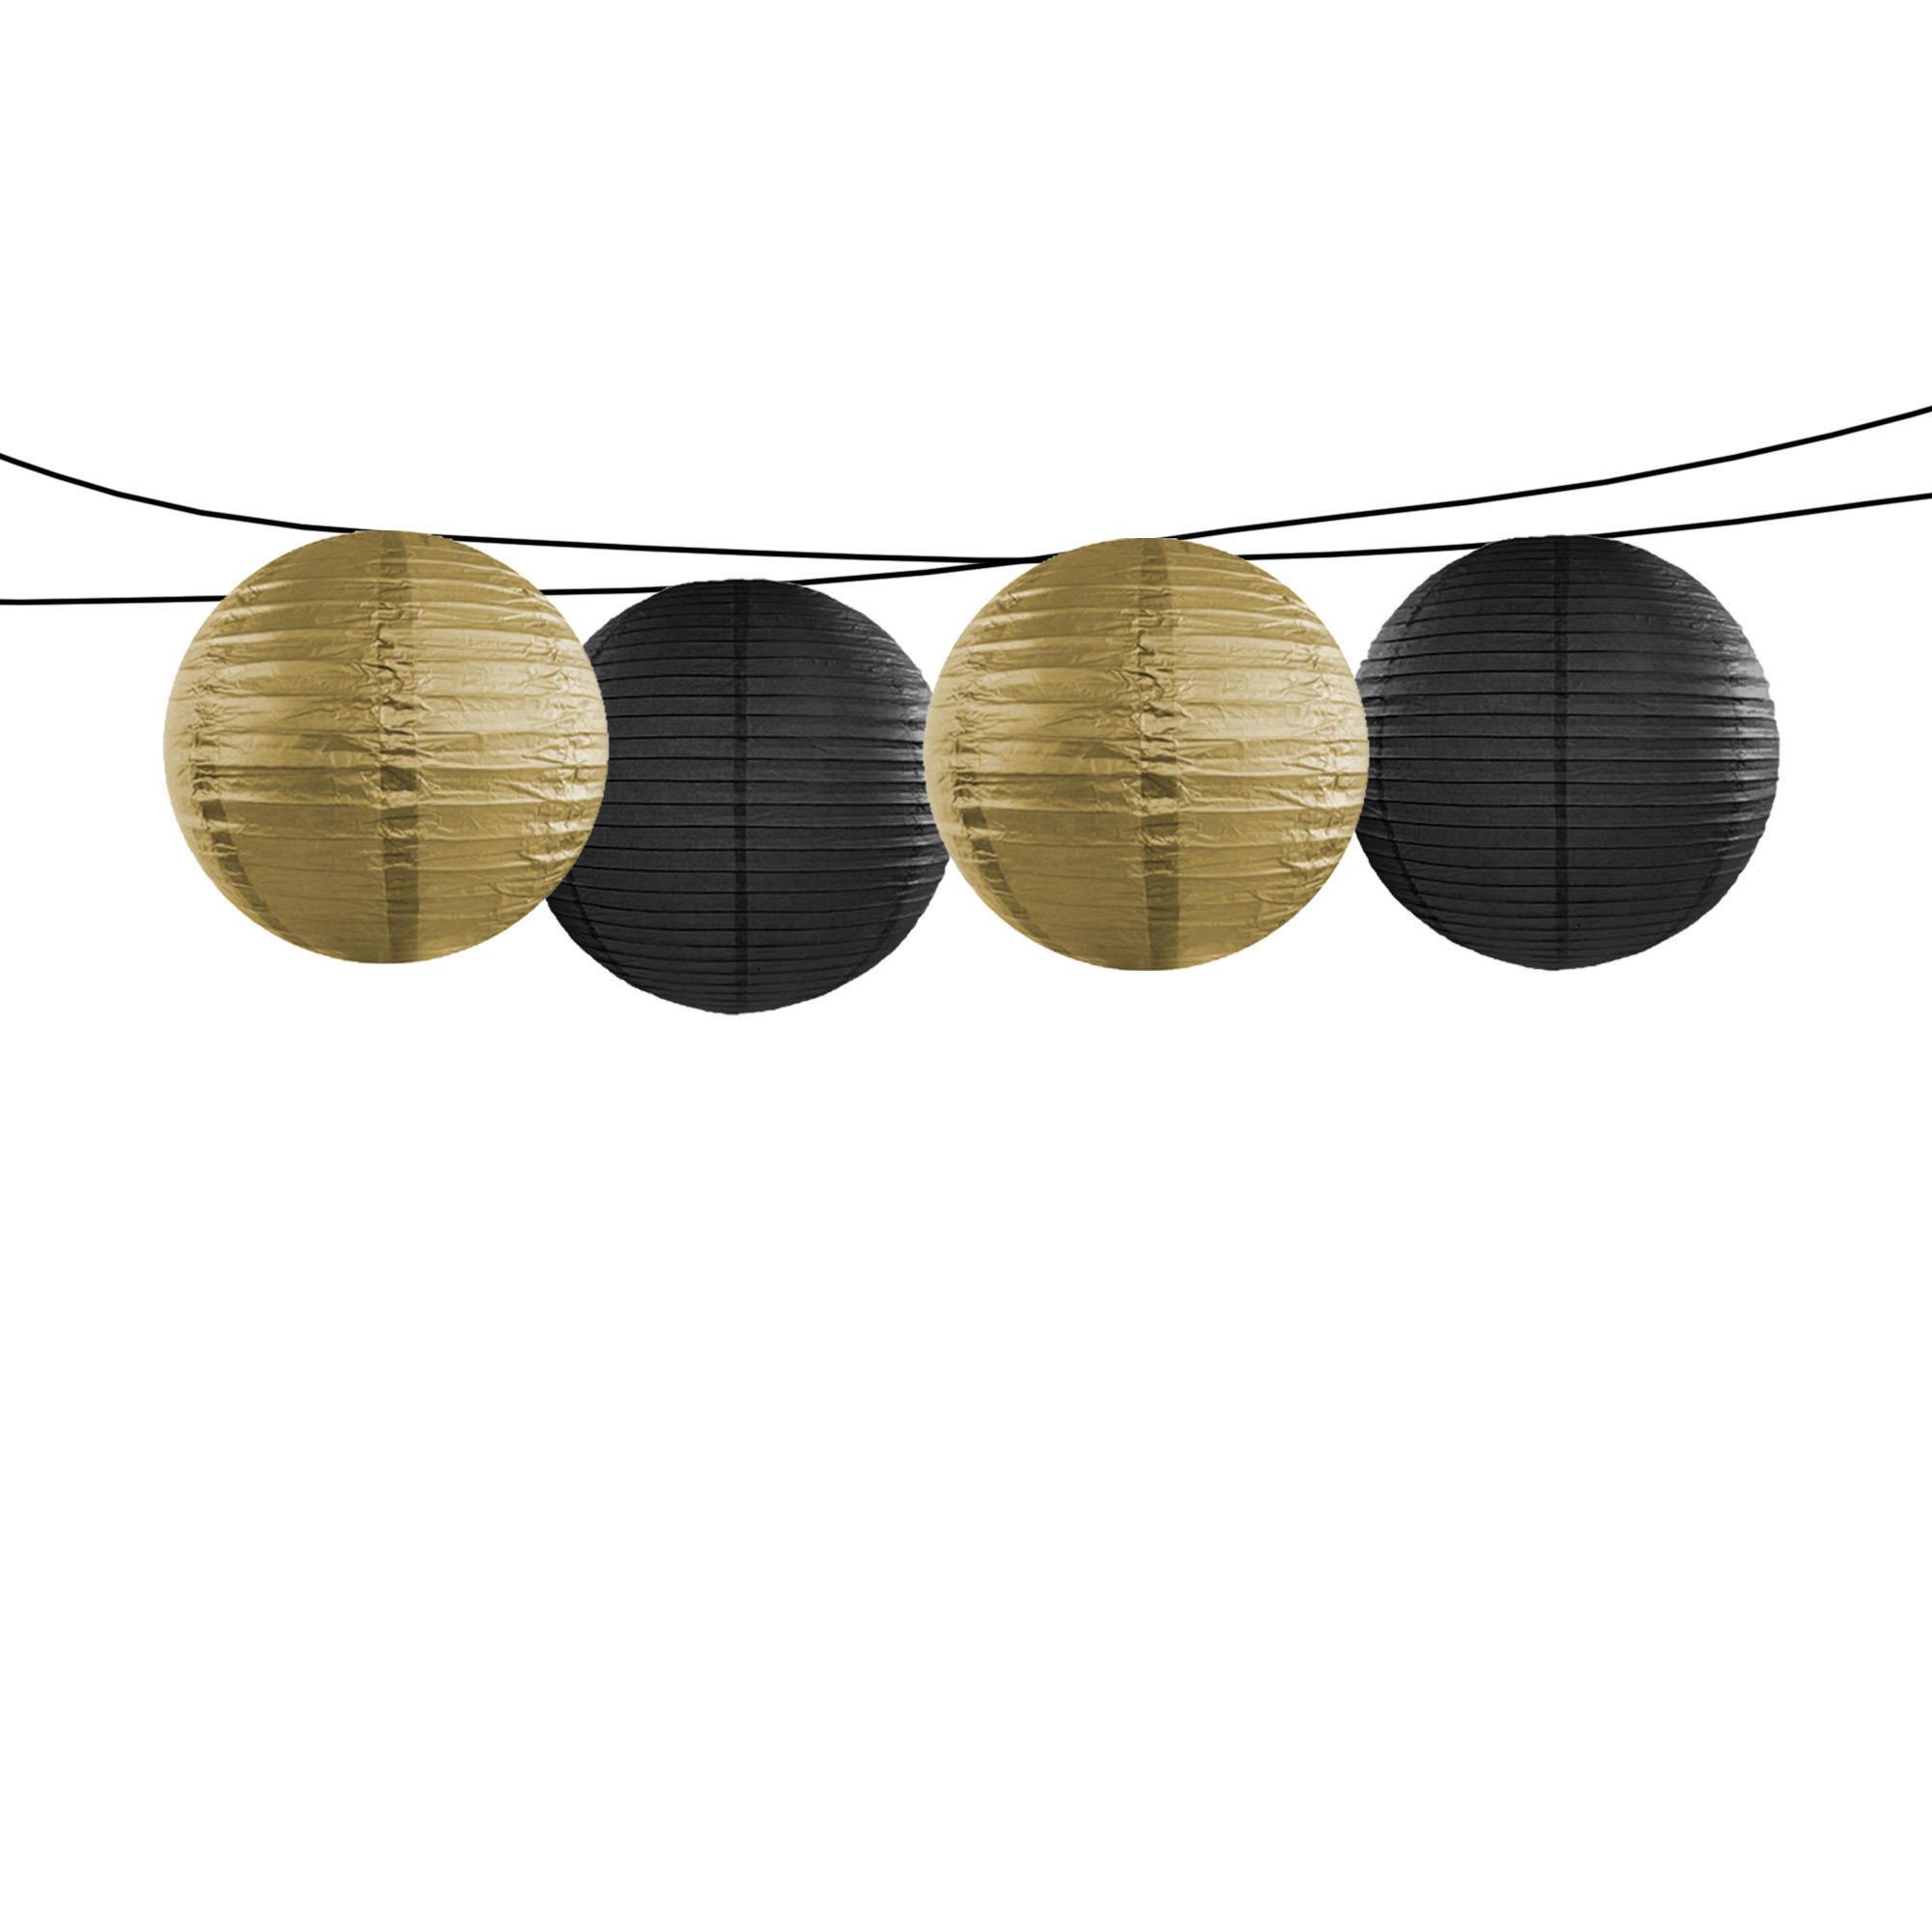 Feest-tuin versiering 4x stuks luxe bol-vorm lampionnen zwart en goud dia 35 cm